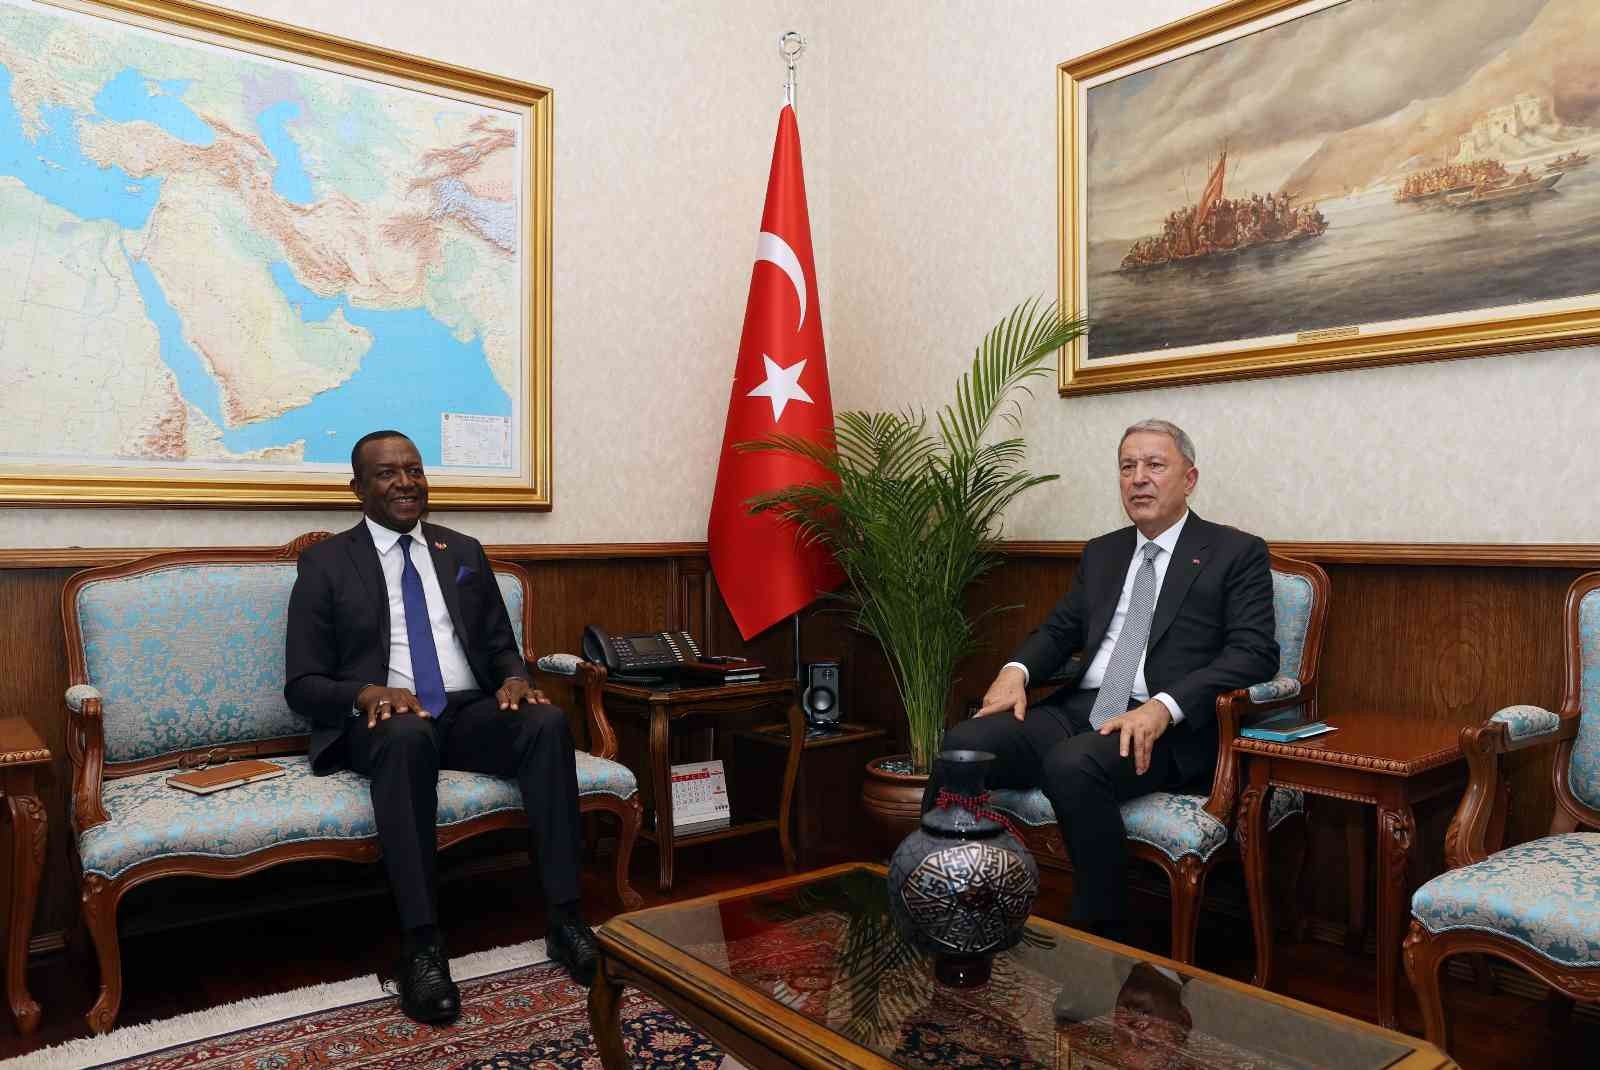 Bakanı Akar, Kamerun Büyükelçisi Tchatchouwo’yu kabul etti